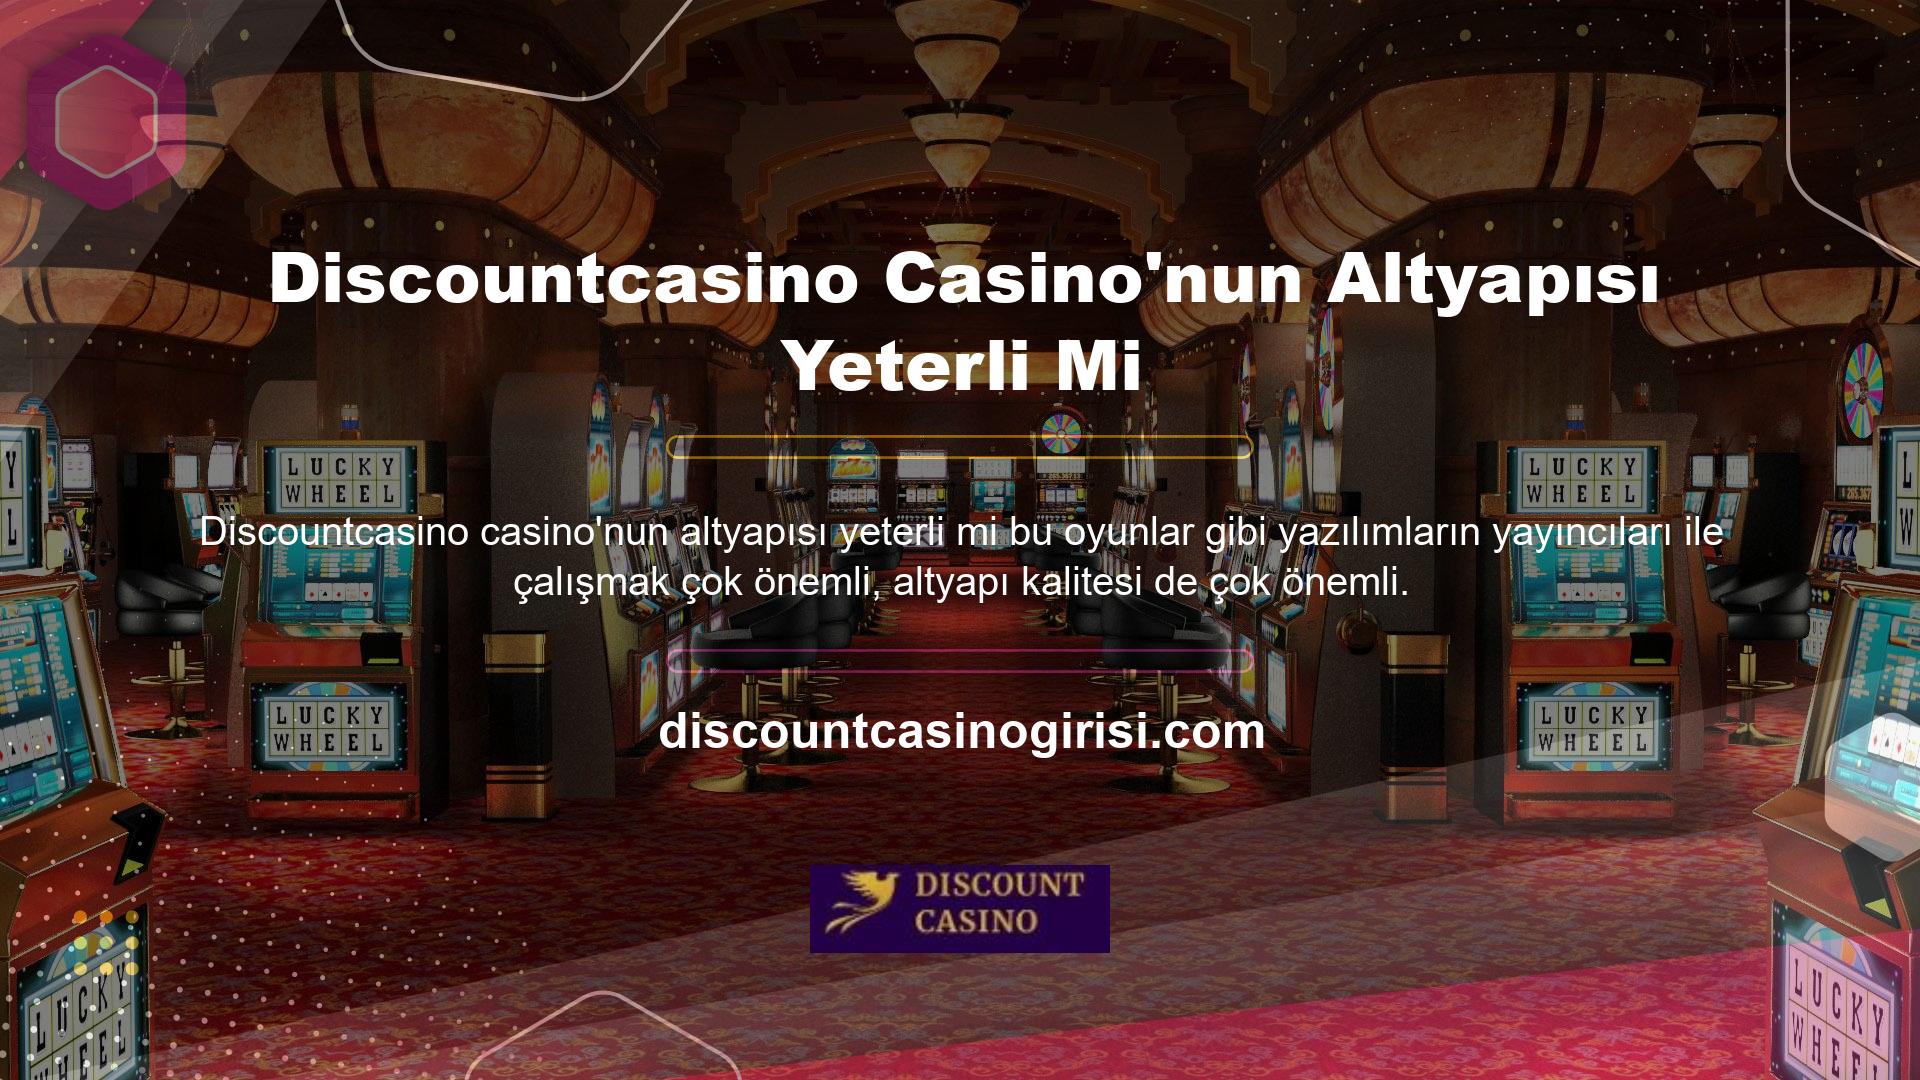 Bu oyunlar, casino hizmetleri için özel olarak tasarlanmış bilgisayar programları kullanılarak geliştirilmiştir